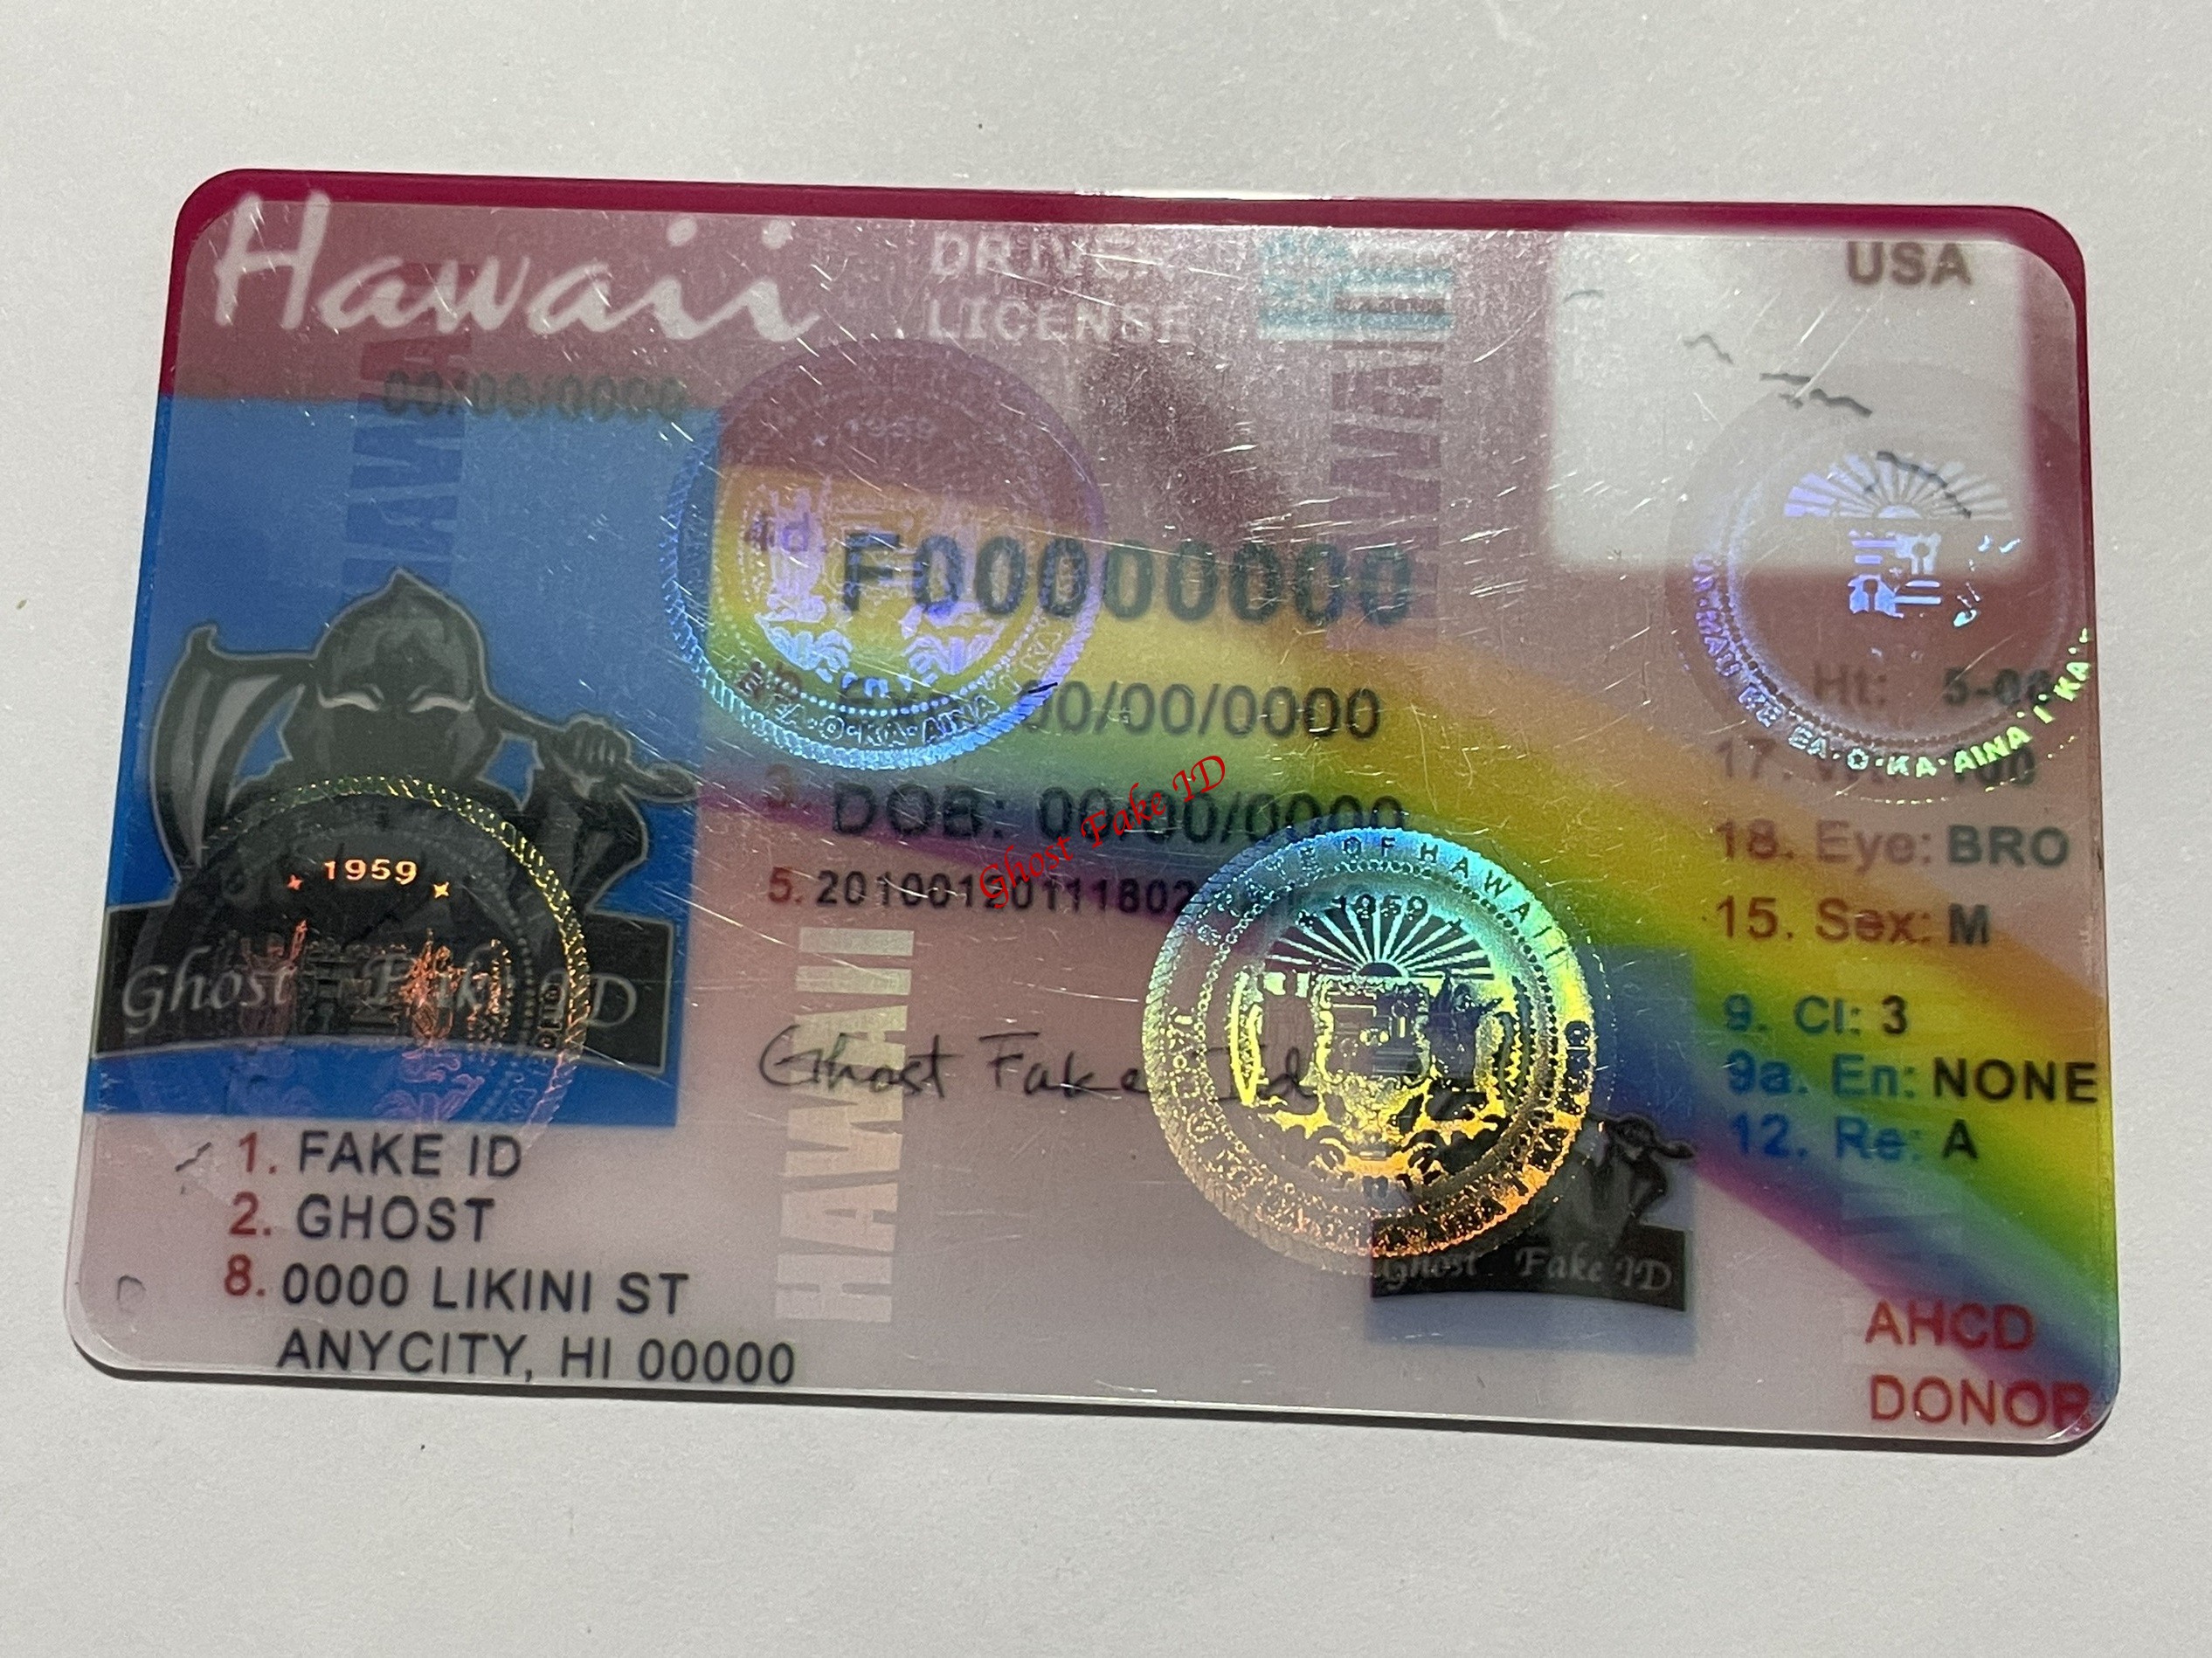 Hawaii - Scanable fake id